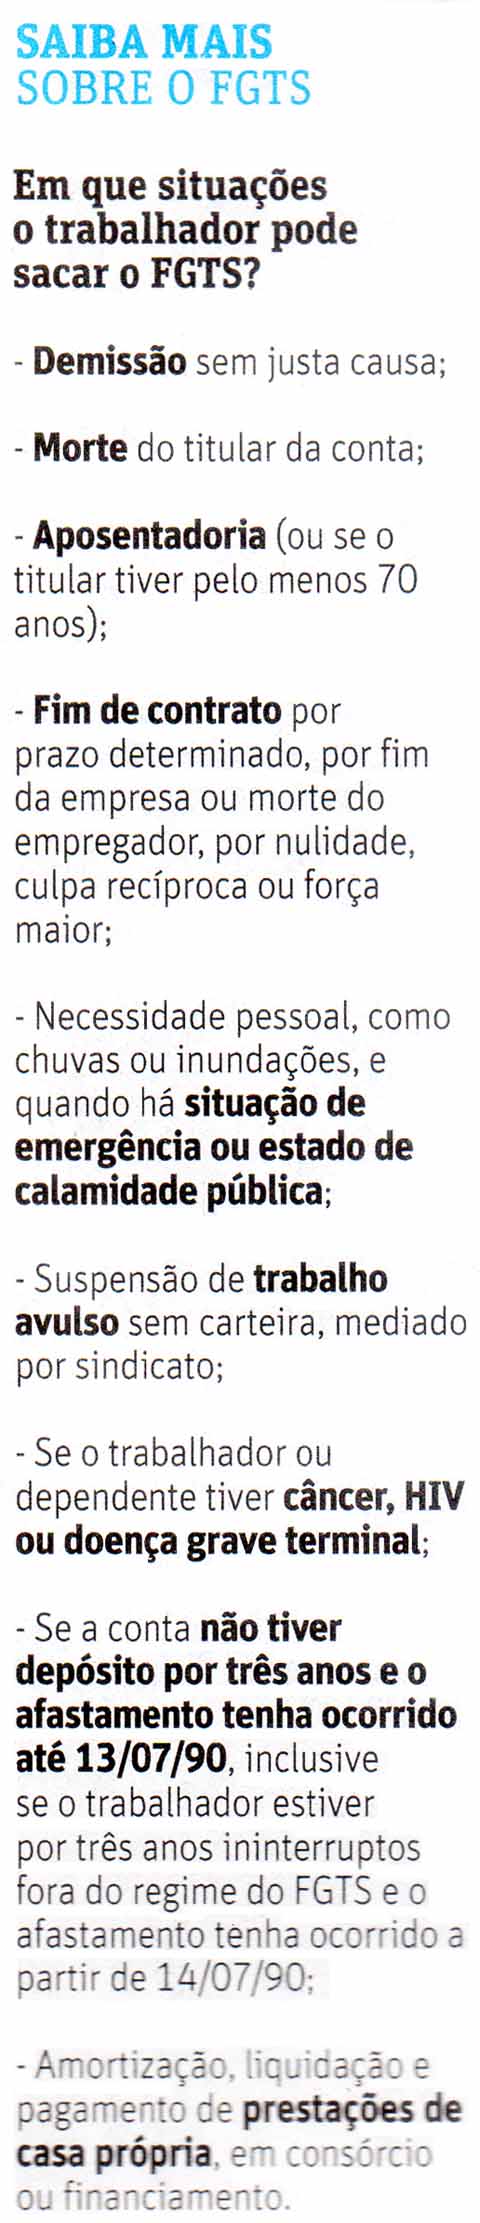 Folha de So Paulo - 23/01/16 - Saque do FGTS